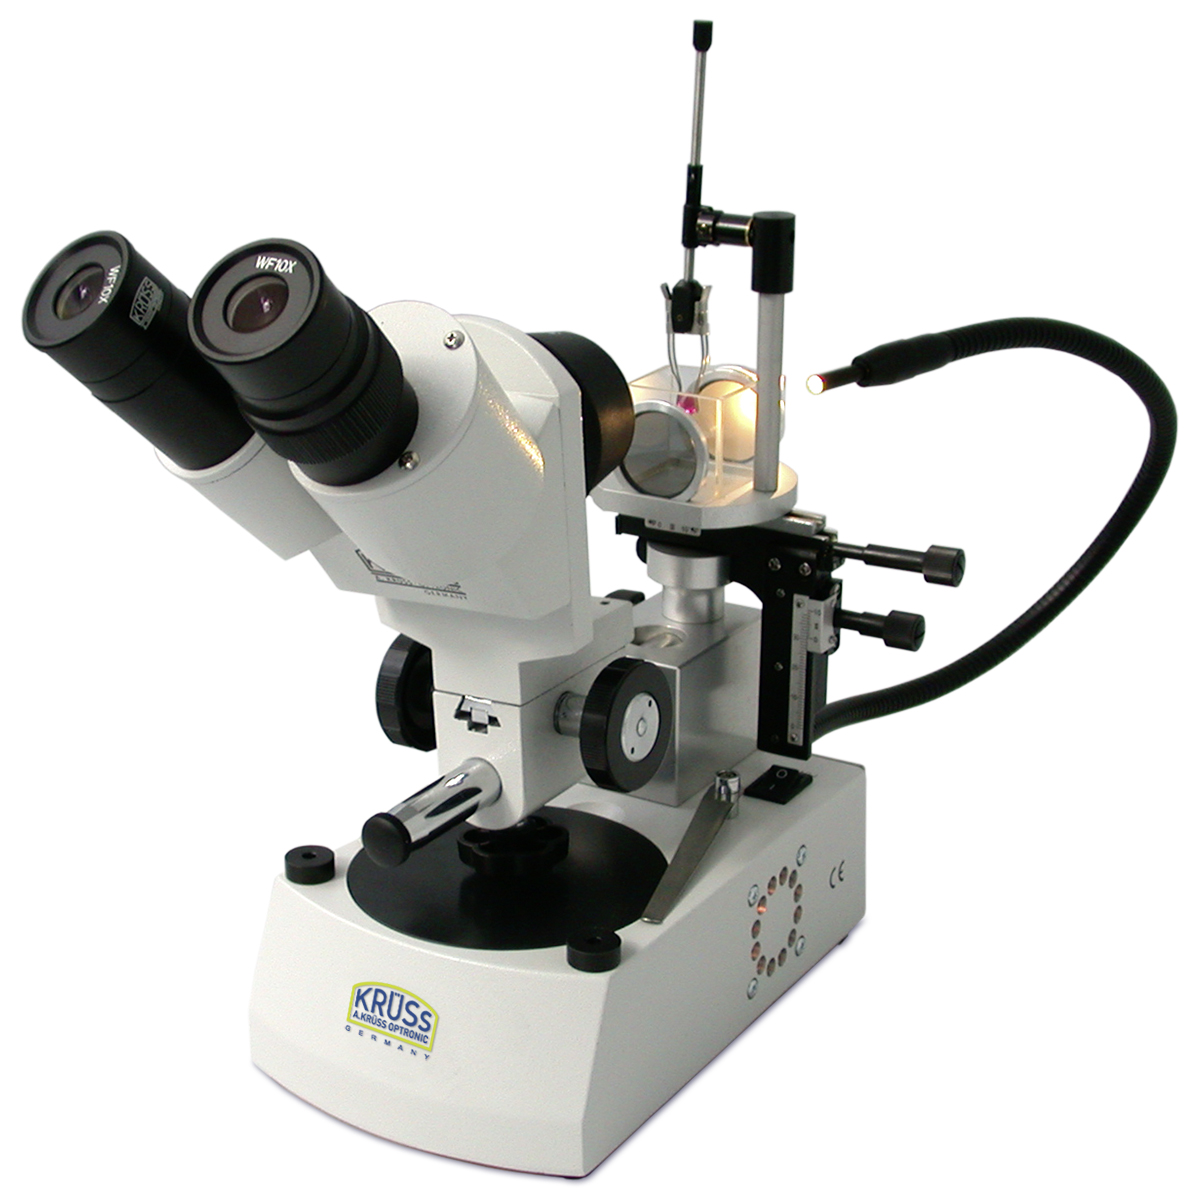 Stereo-Edelstein-Mikroskop KSW4000-K-W, 10x und 30x, mit Zubehör für die Untersuchung mit
Flüssigkeit